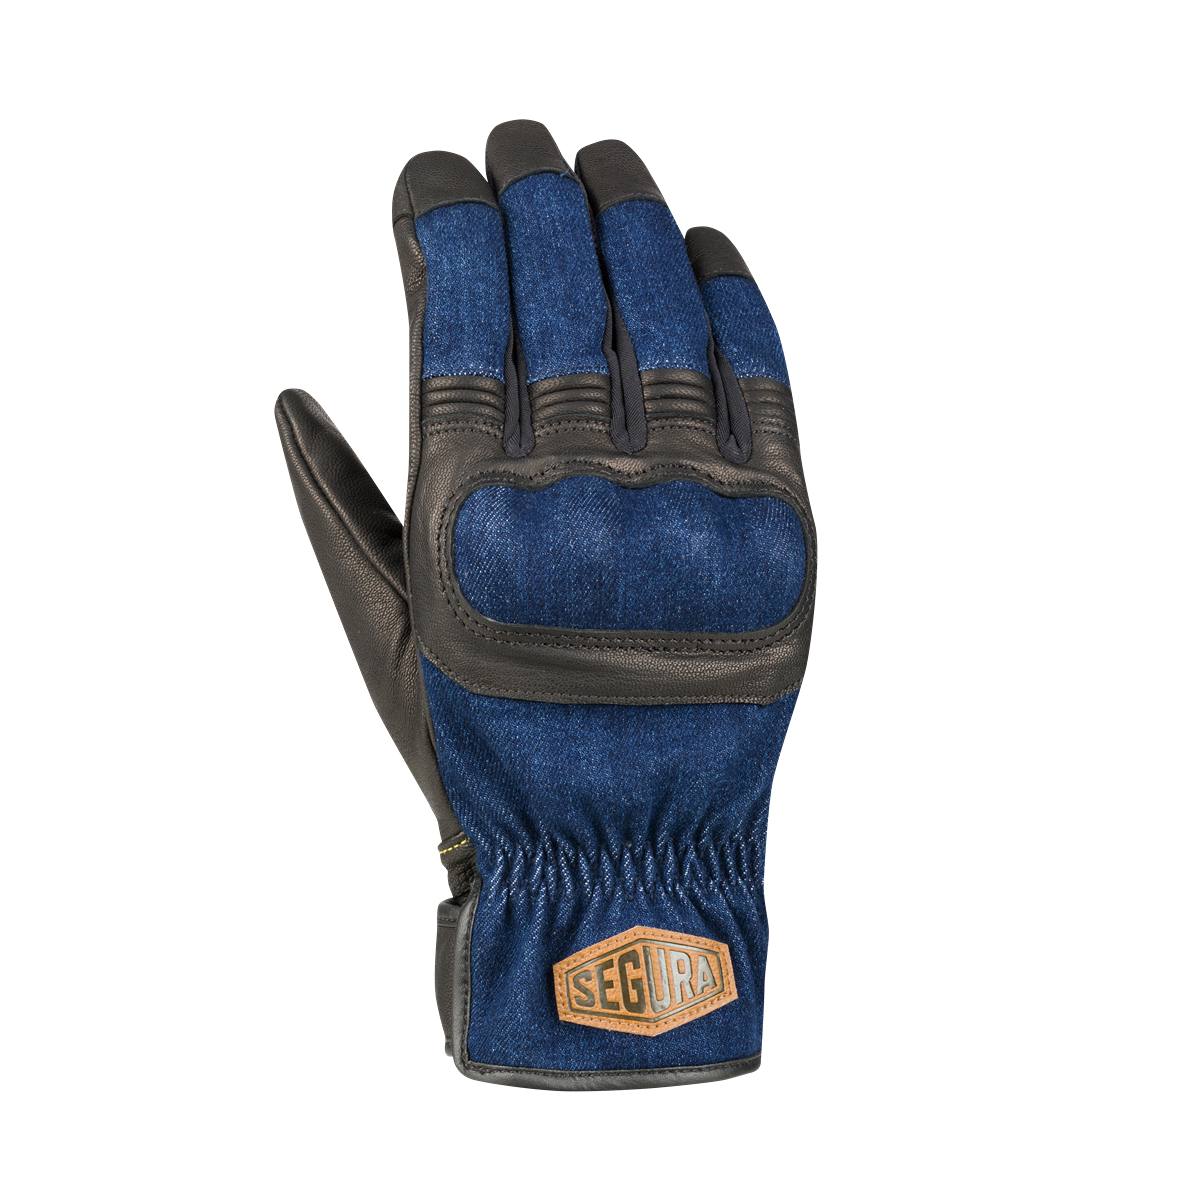 Image of Segura Hunky Gloves Black Blue Size T13 EN